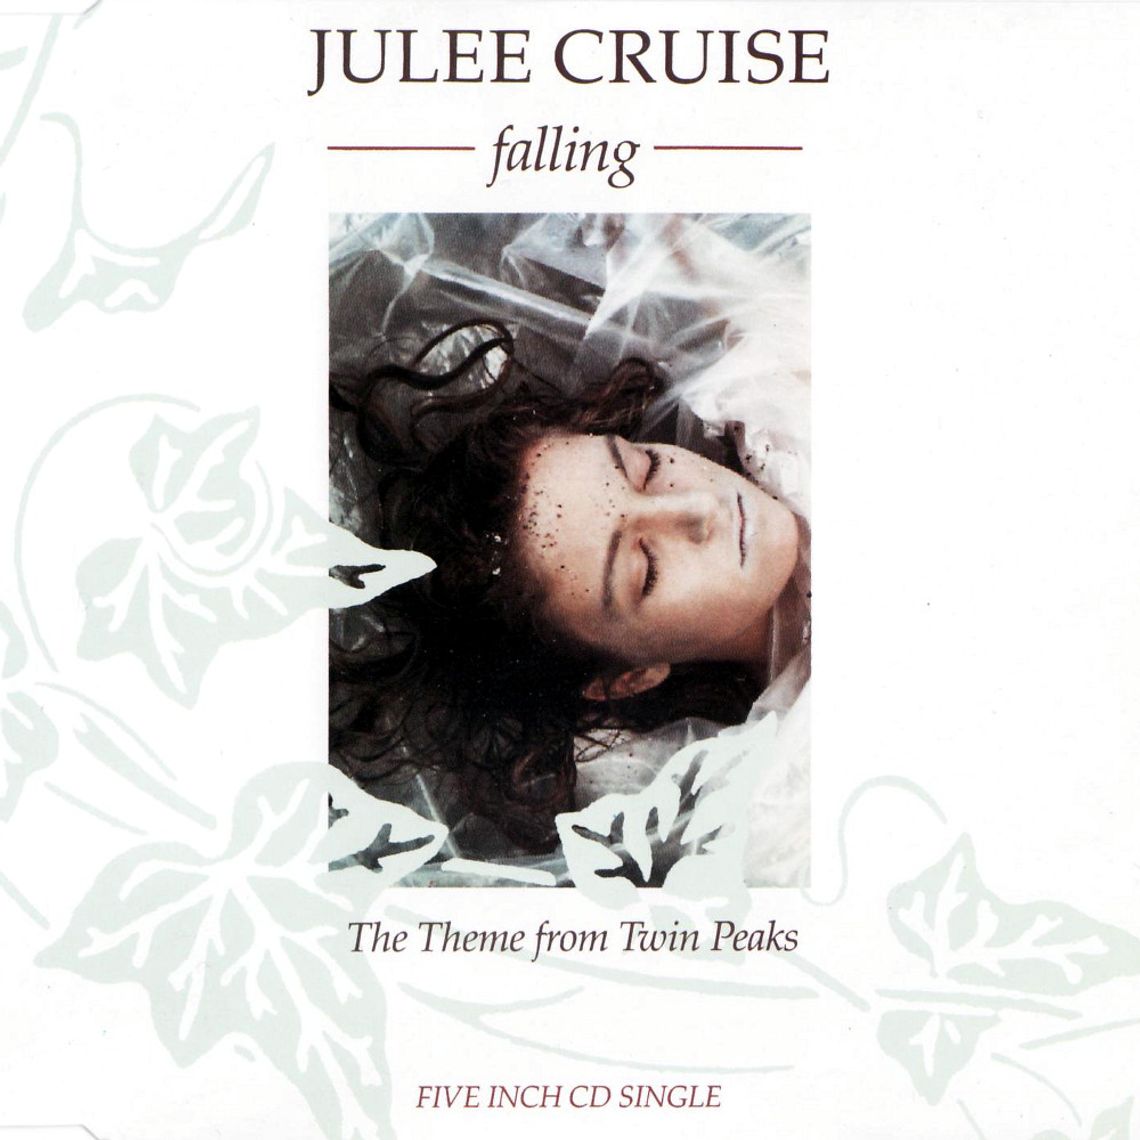 Julee Cruise "Falling"